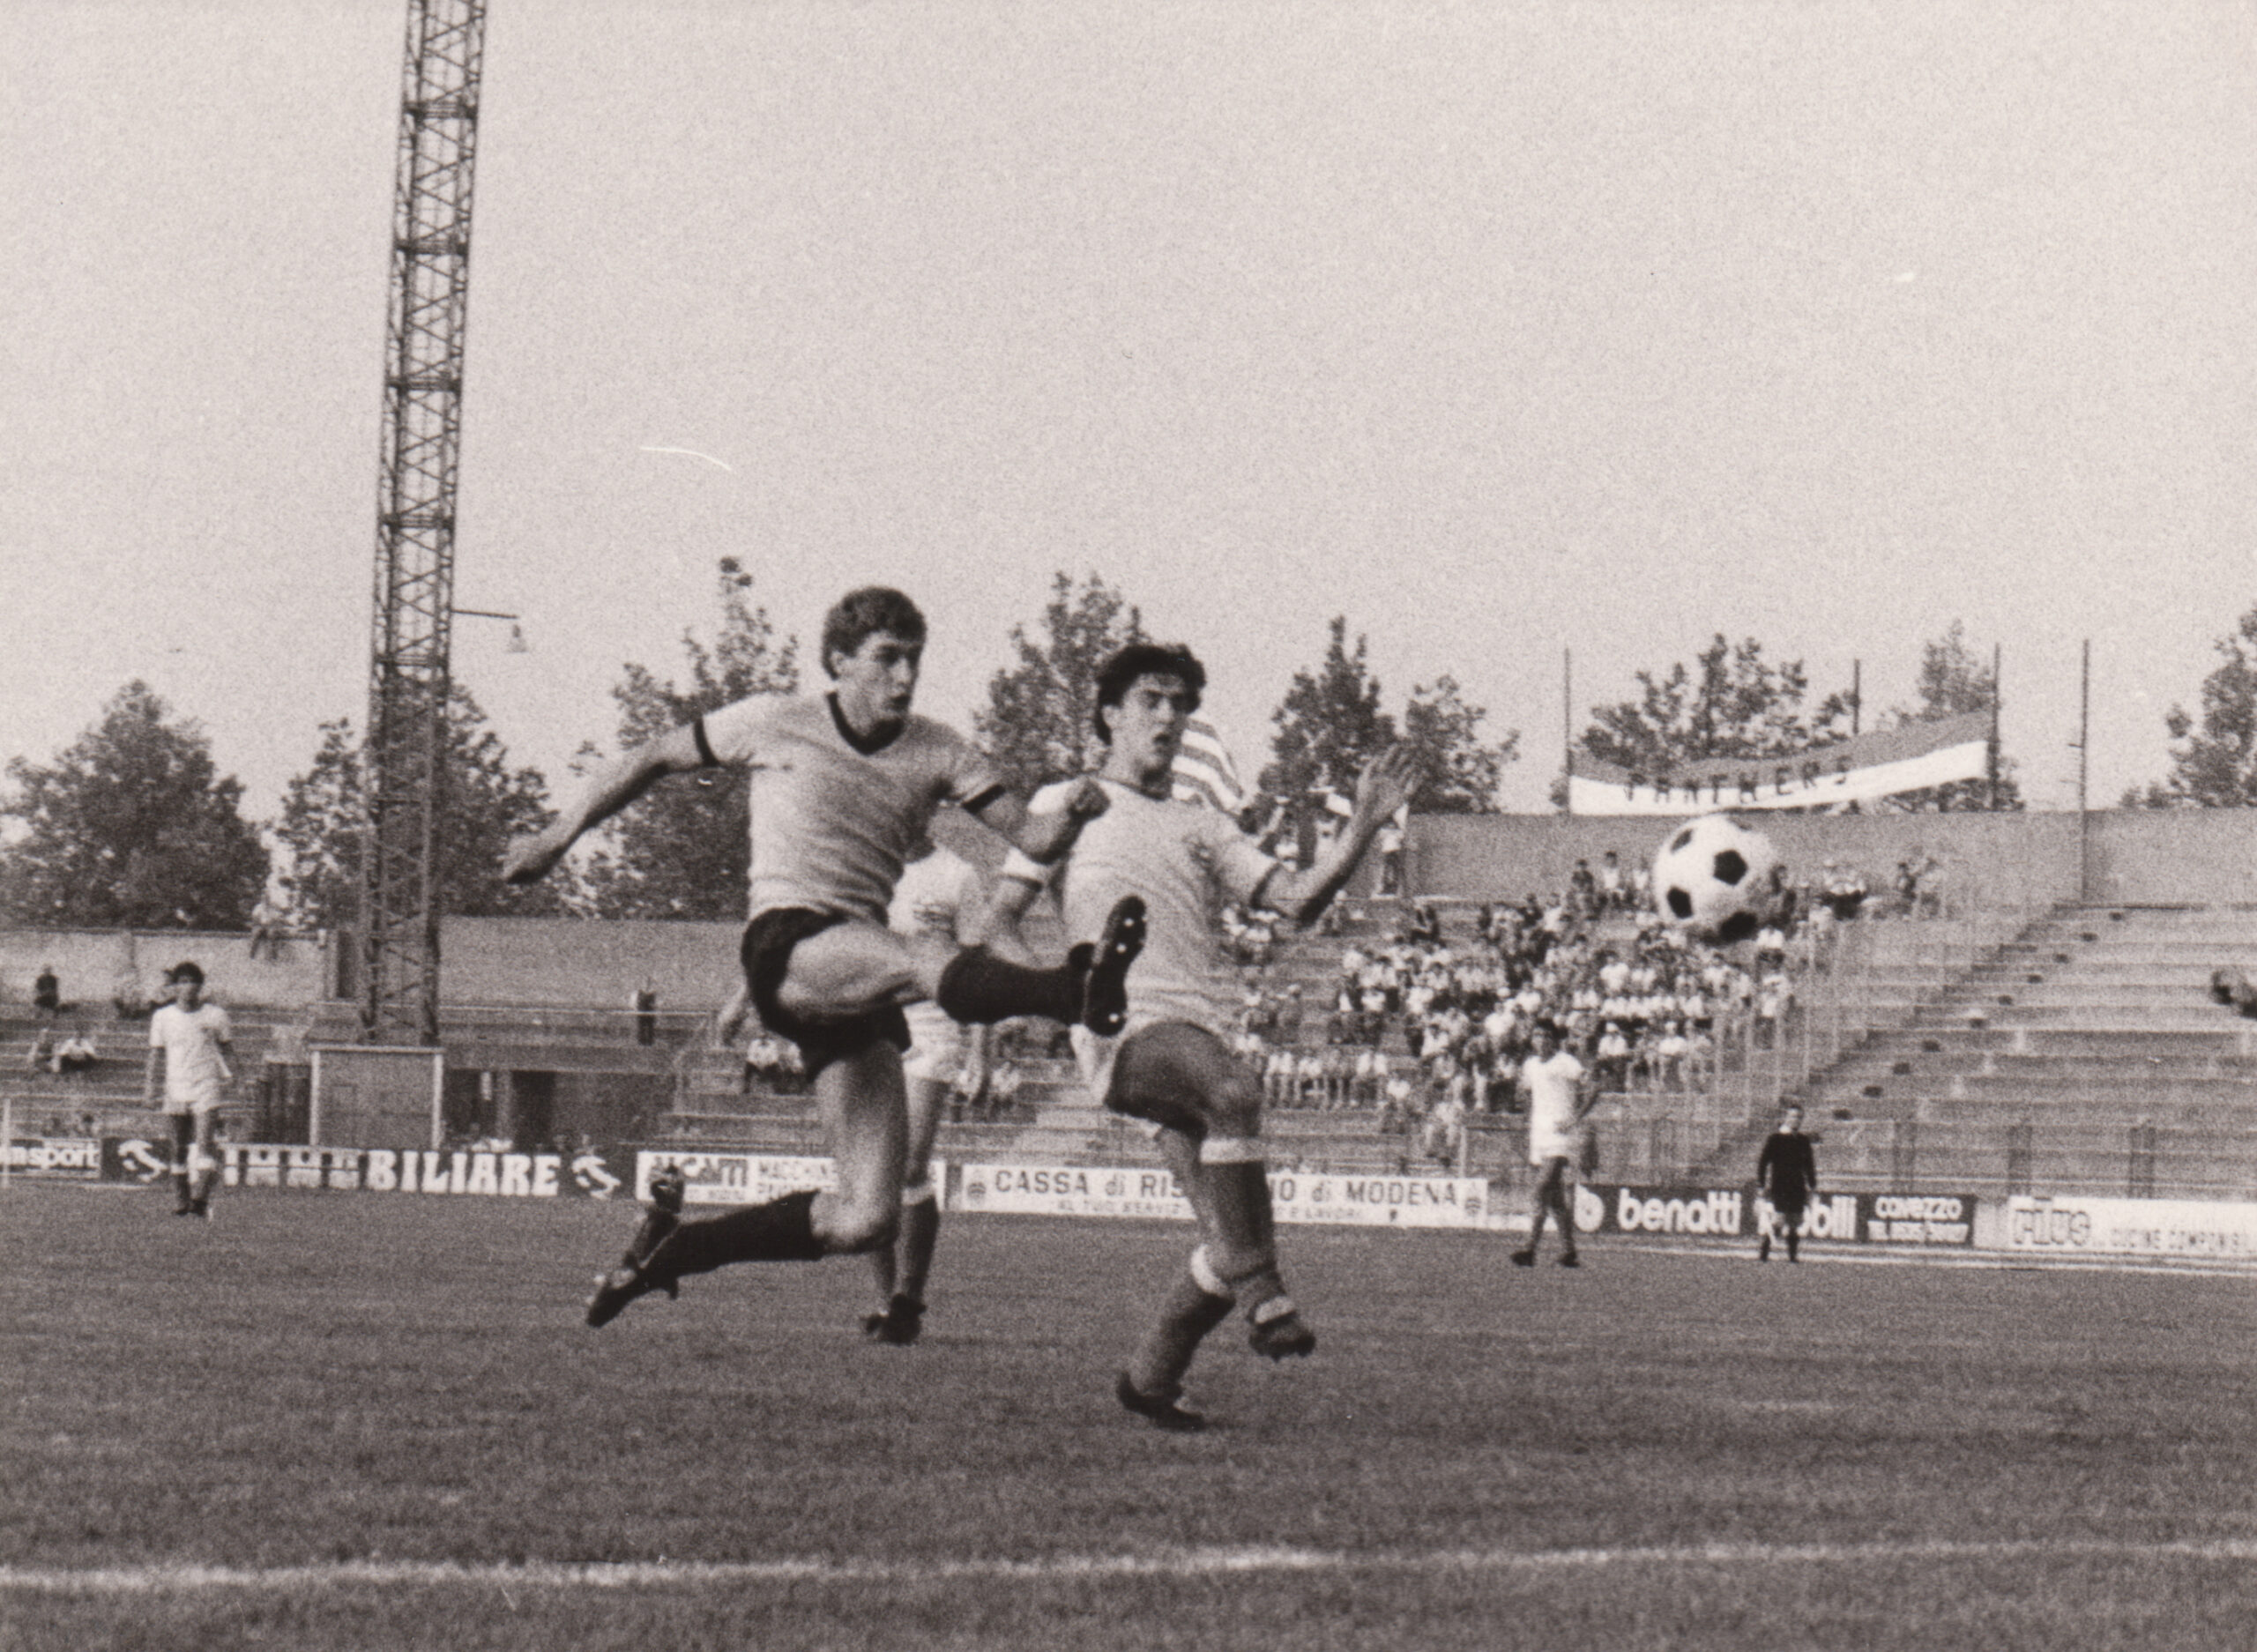 Modena-Carpi 0-1 (0-0), Modena, Stadio Alberto Braglia, 24 settembre 1978. Sberveglieri al tiro. Sullo sfondo visibilelo striscione dei Panthers carpigiani. 